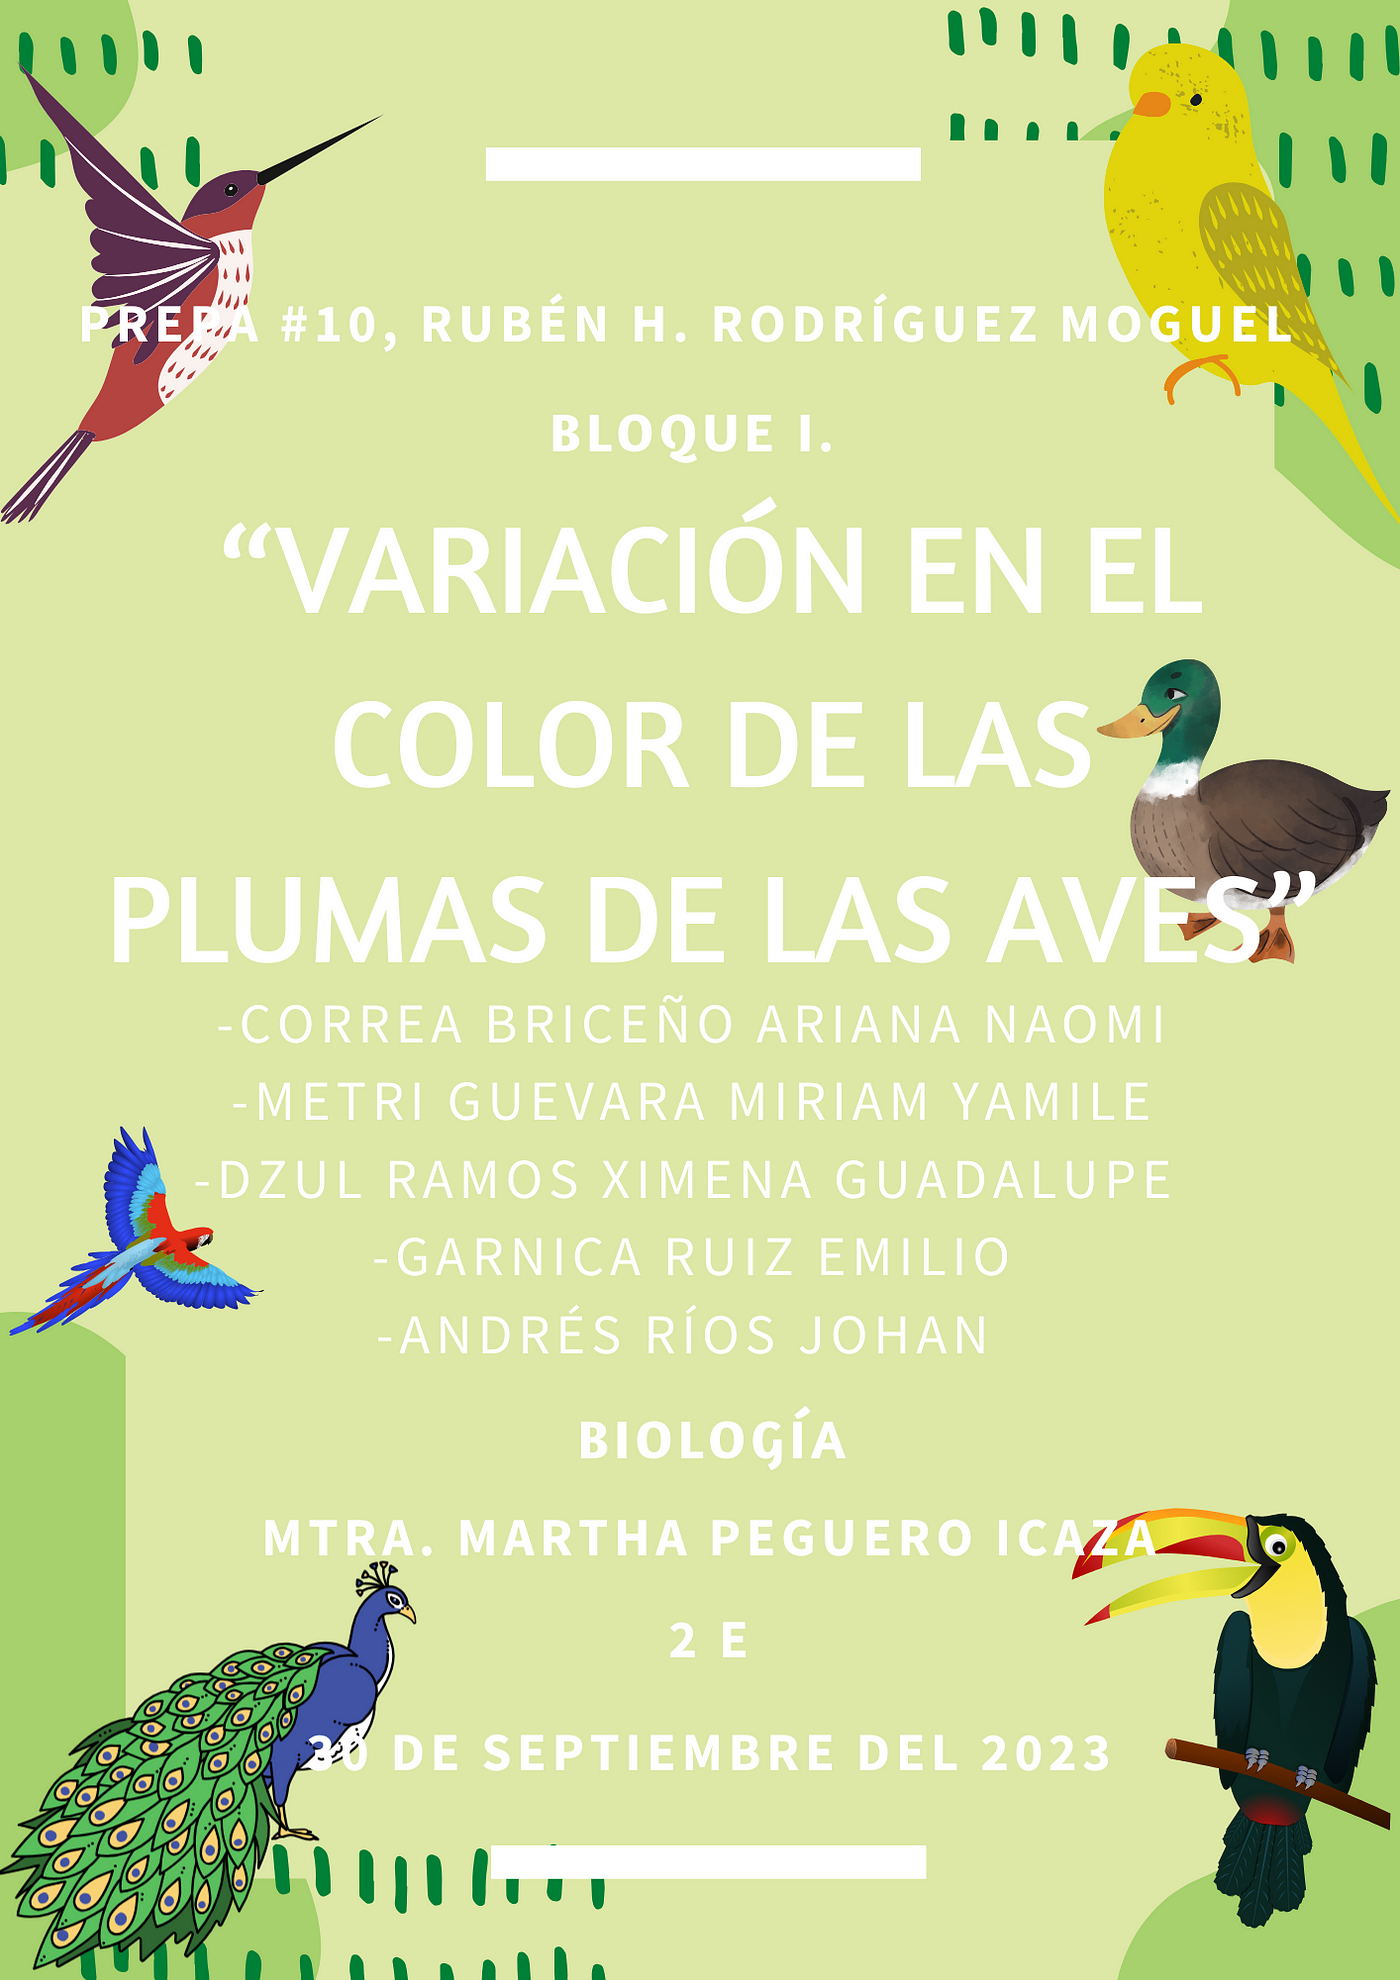 Variación en el color de las plumas de las aves. | by Bellaquitos | Medium